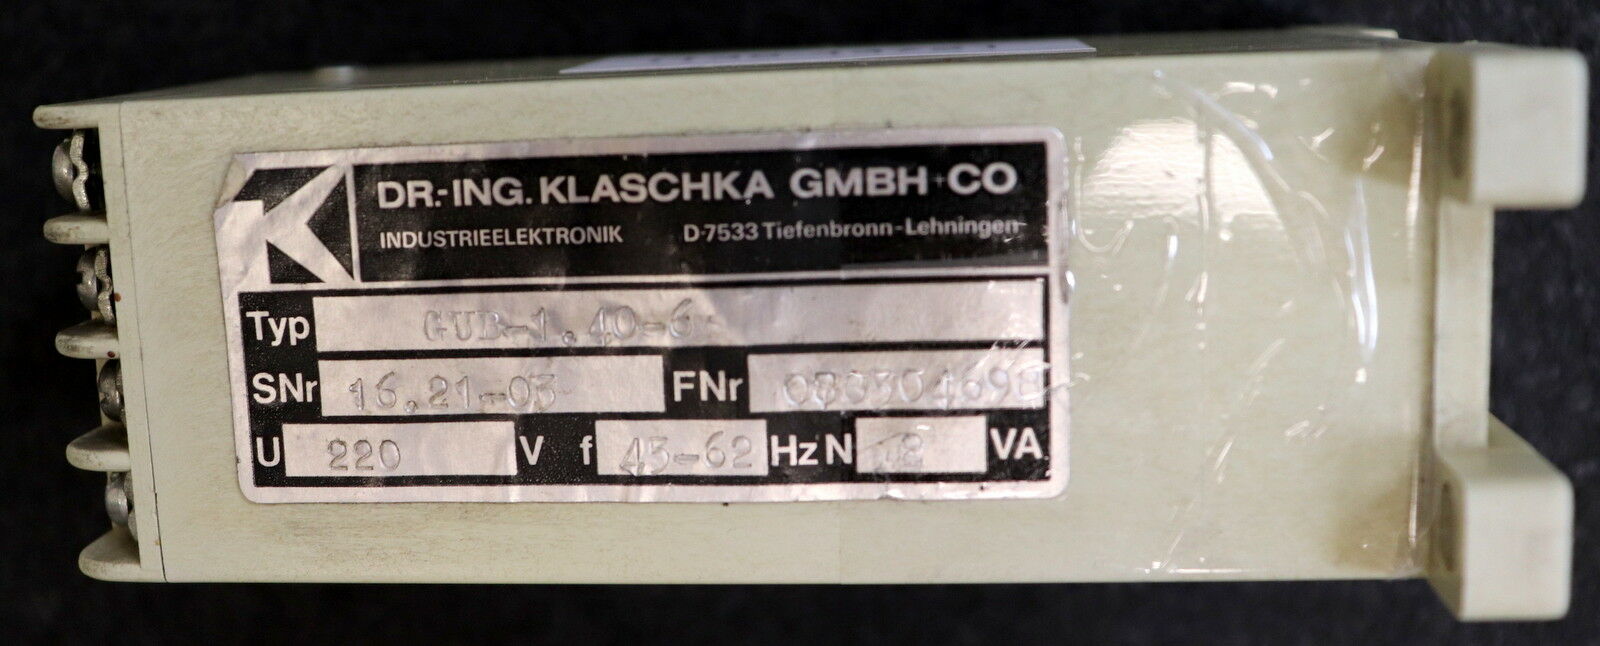 KLASCHKA Relais für Gleichspannung GUB-1,4-6 220VAC 45-62Hz 0,17-0,8A gebraucht